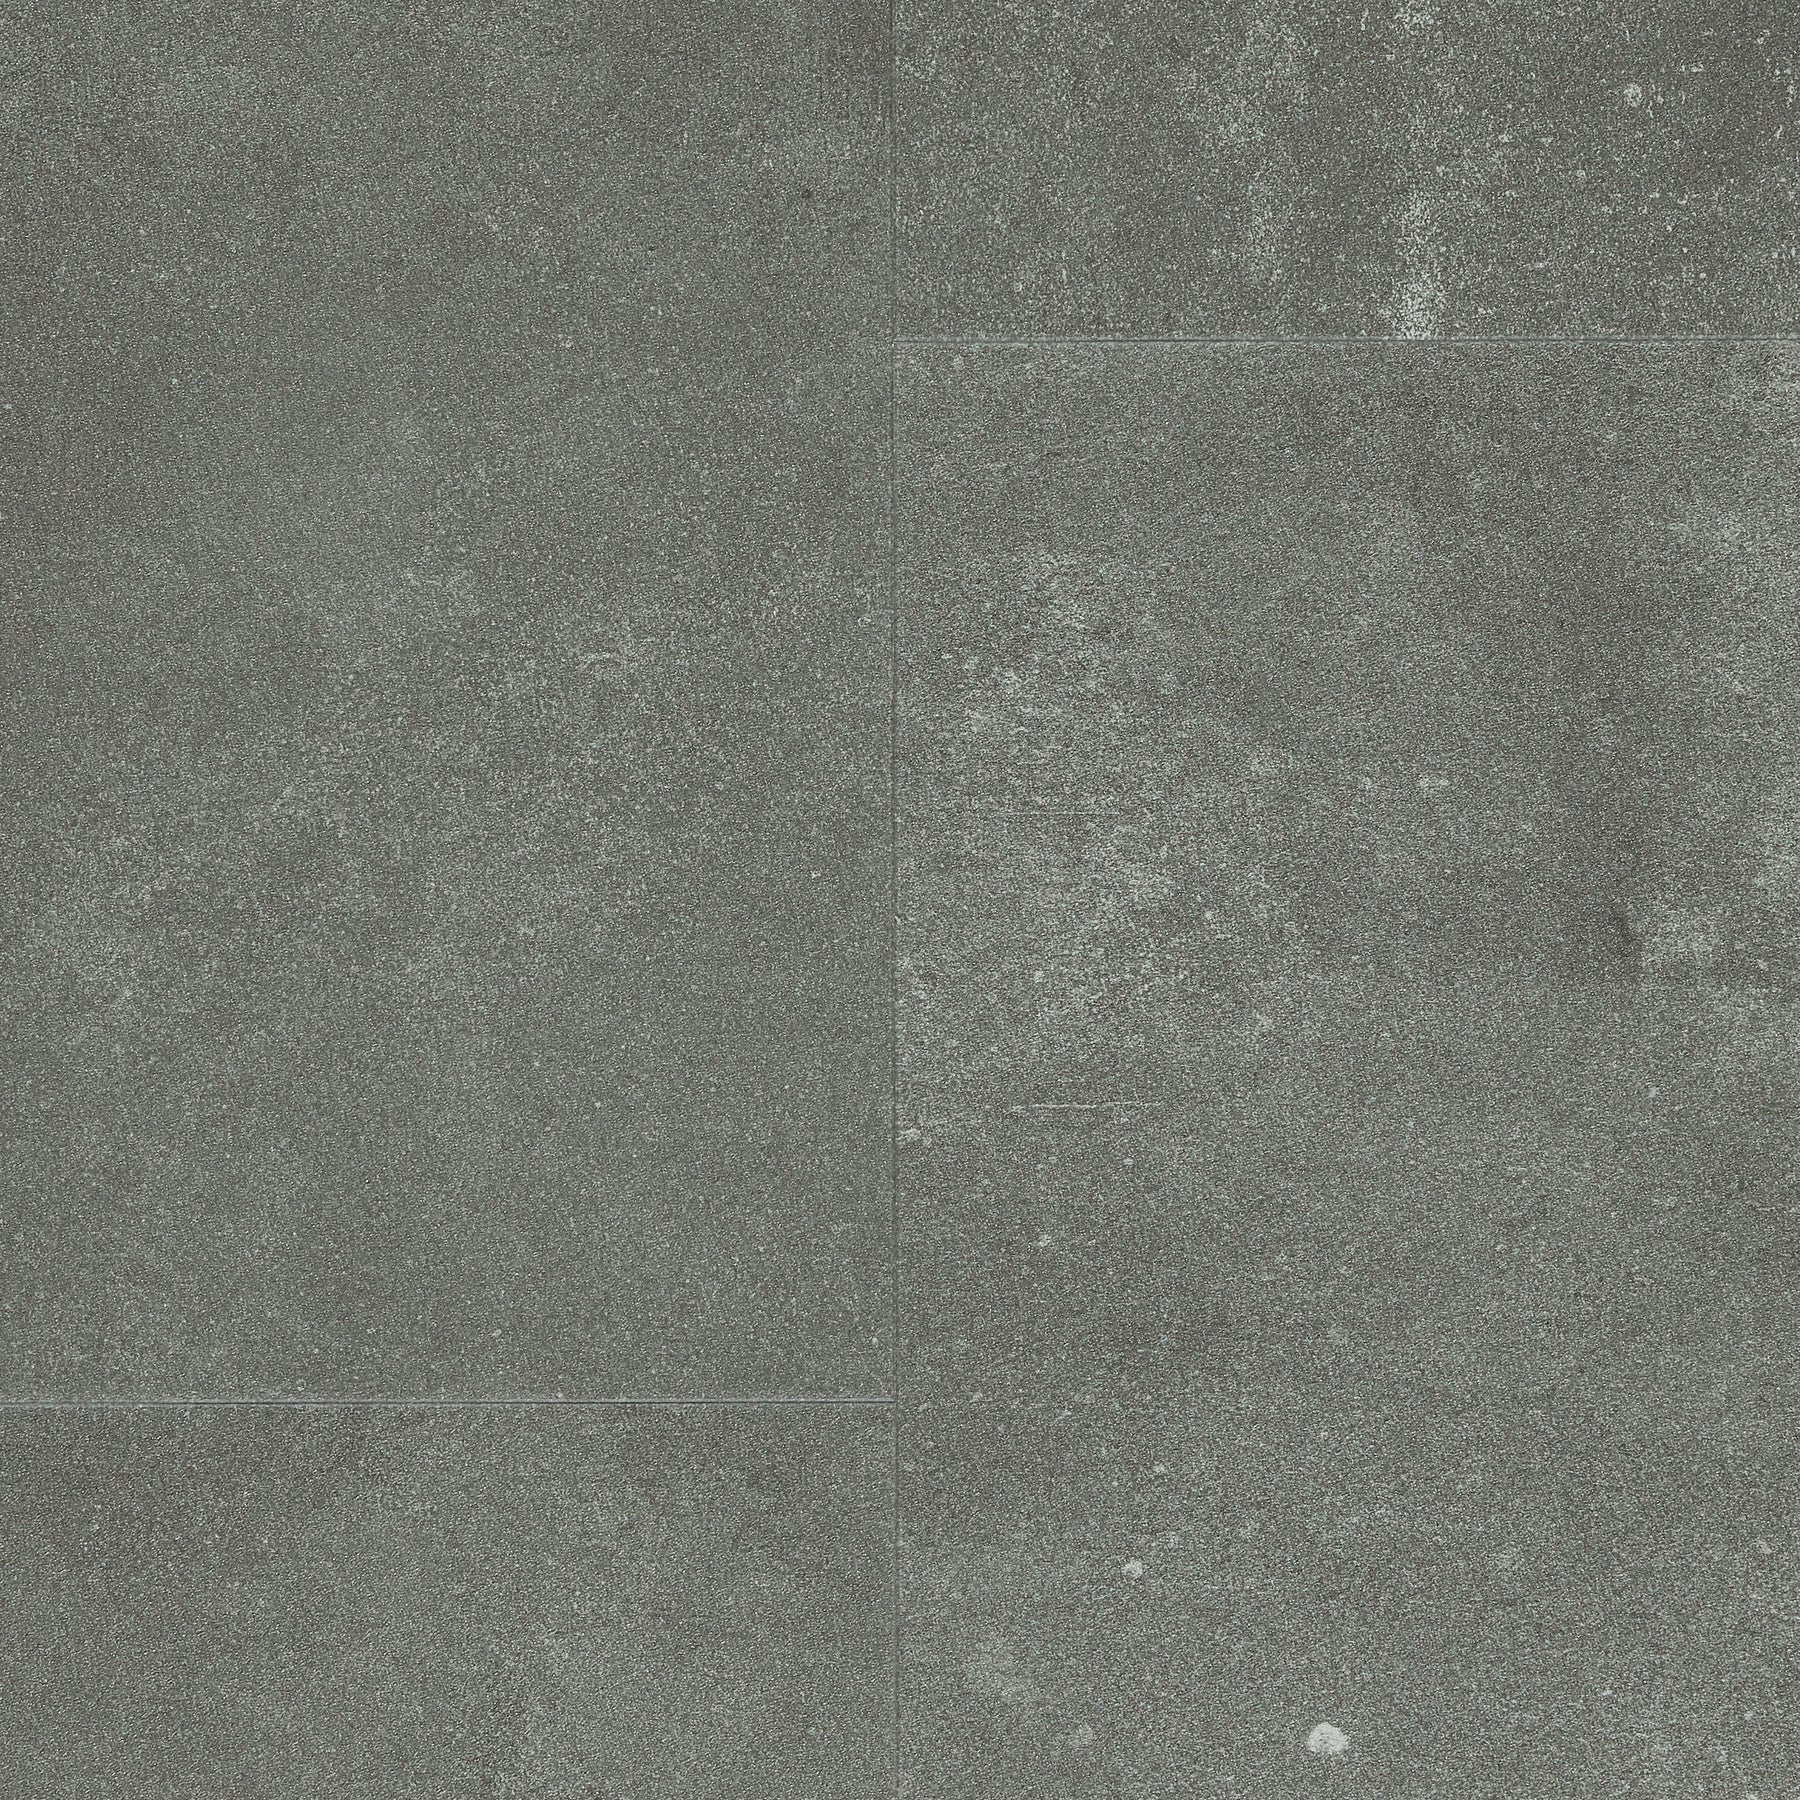 60001588 (Pure Click 55 Urban Stone (Ishigame) Dark Gray)